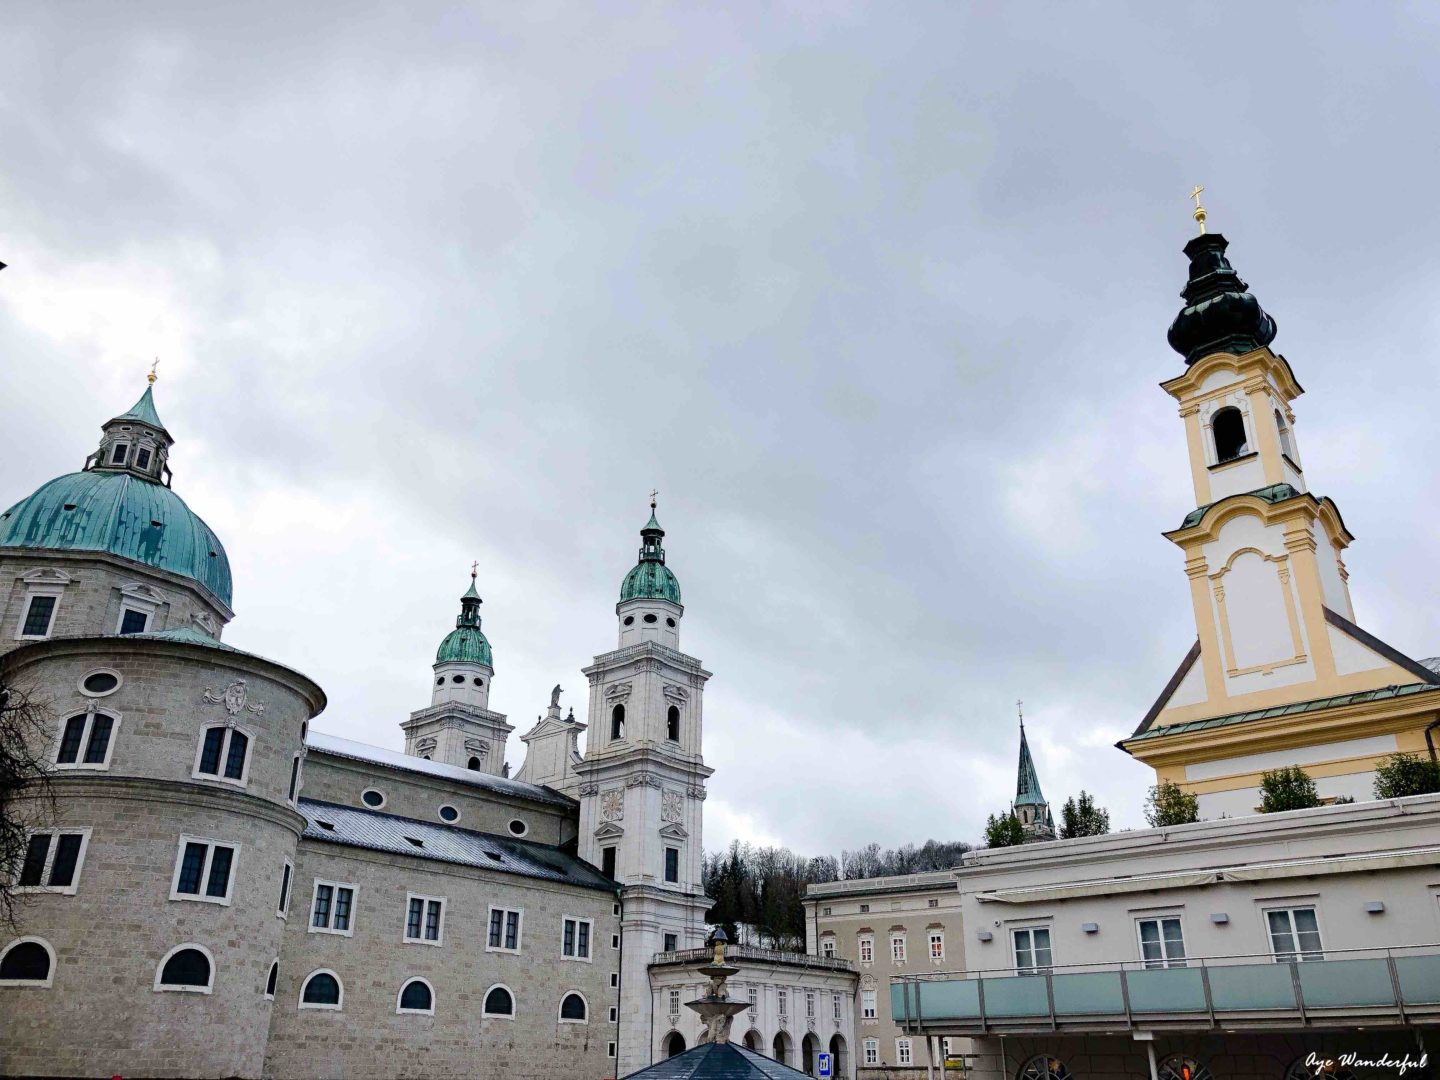 One day in Salzburg Austria; Salzburg in winter